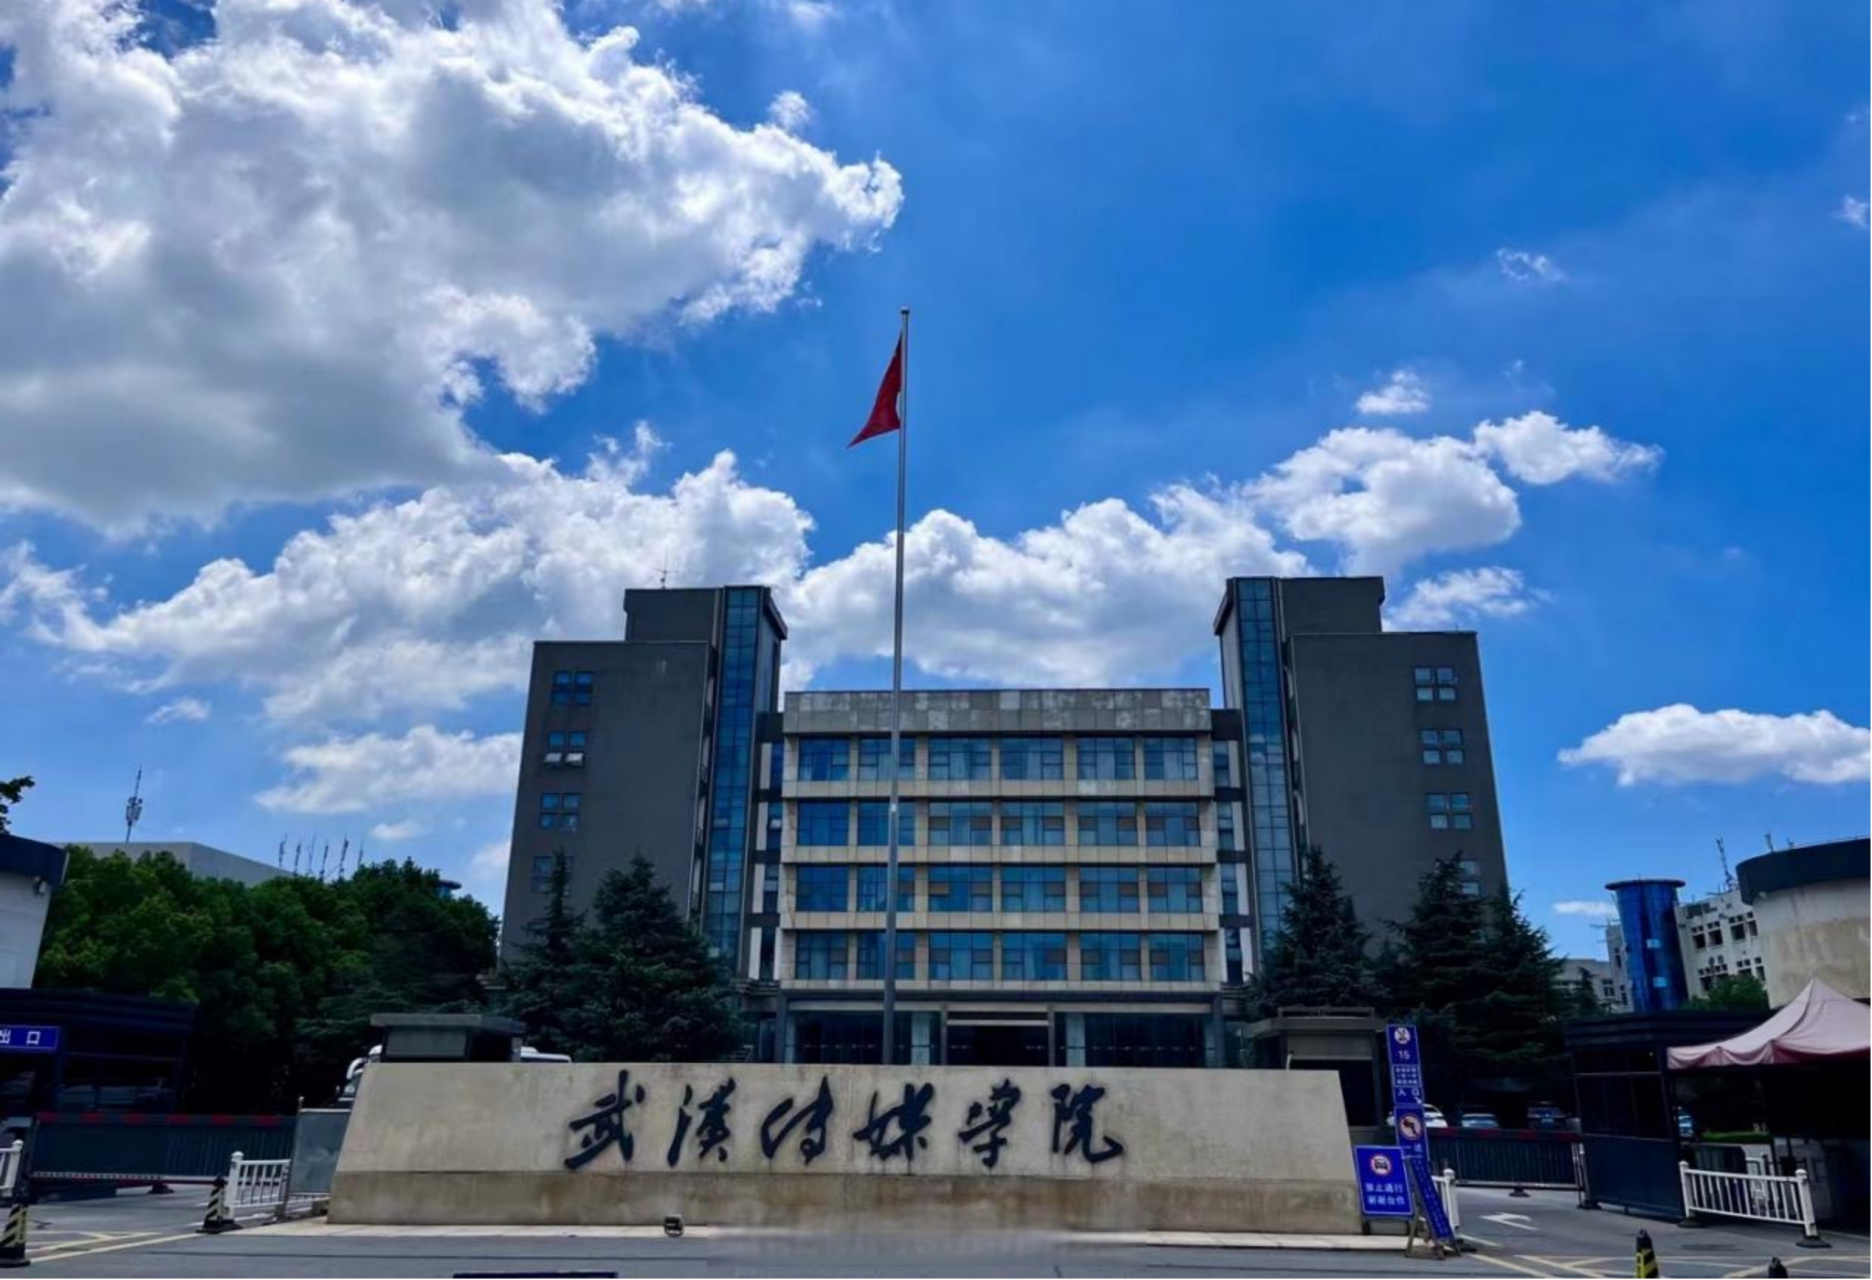 武汉传媒学院